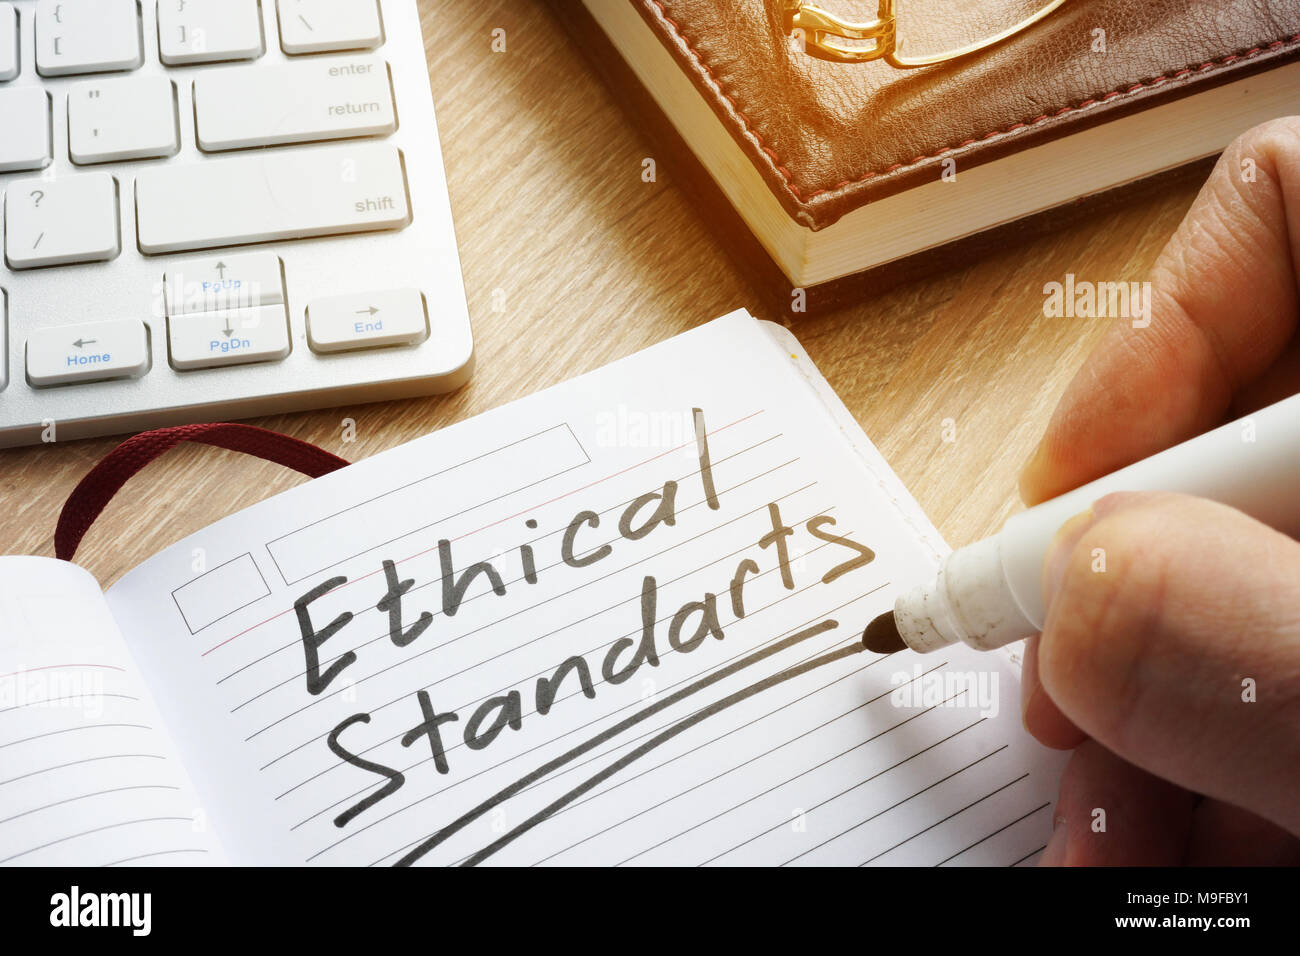 Gli standard etici scritto in nota. Foto Stock